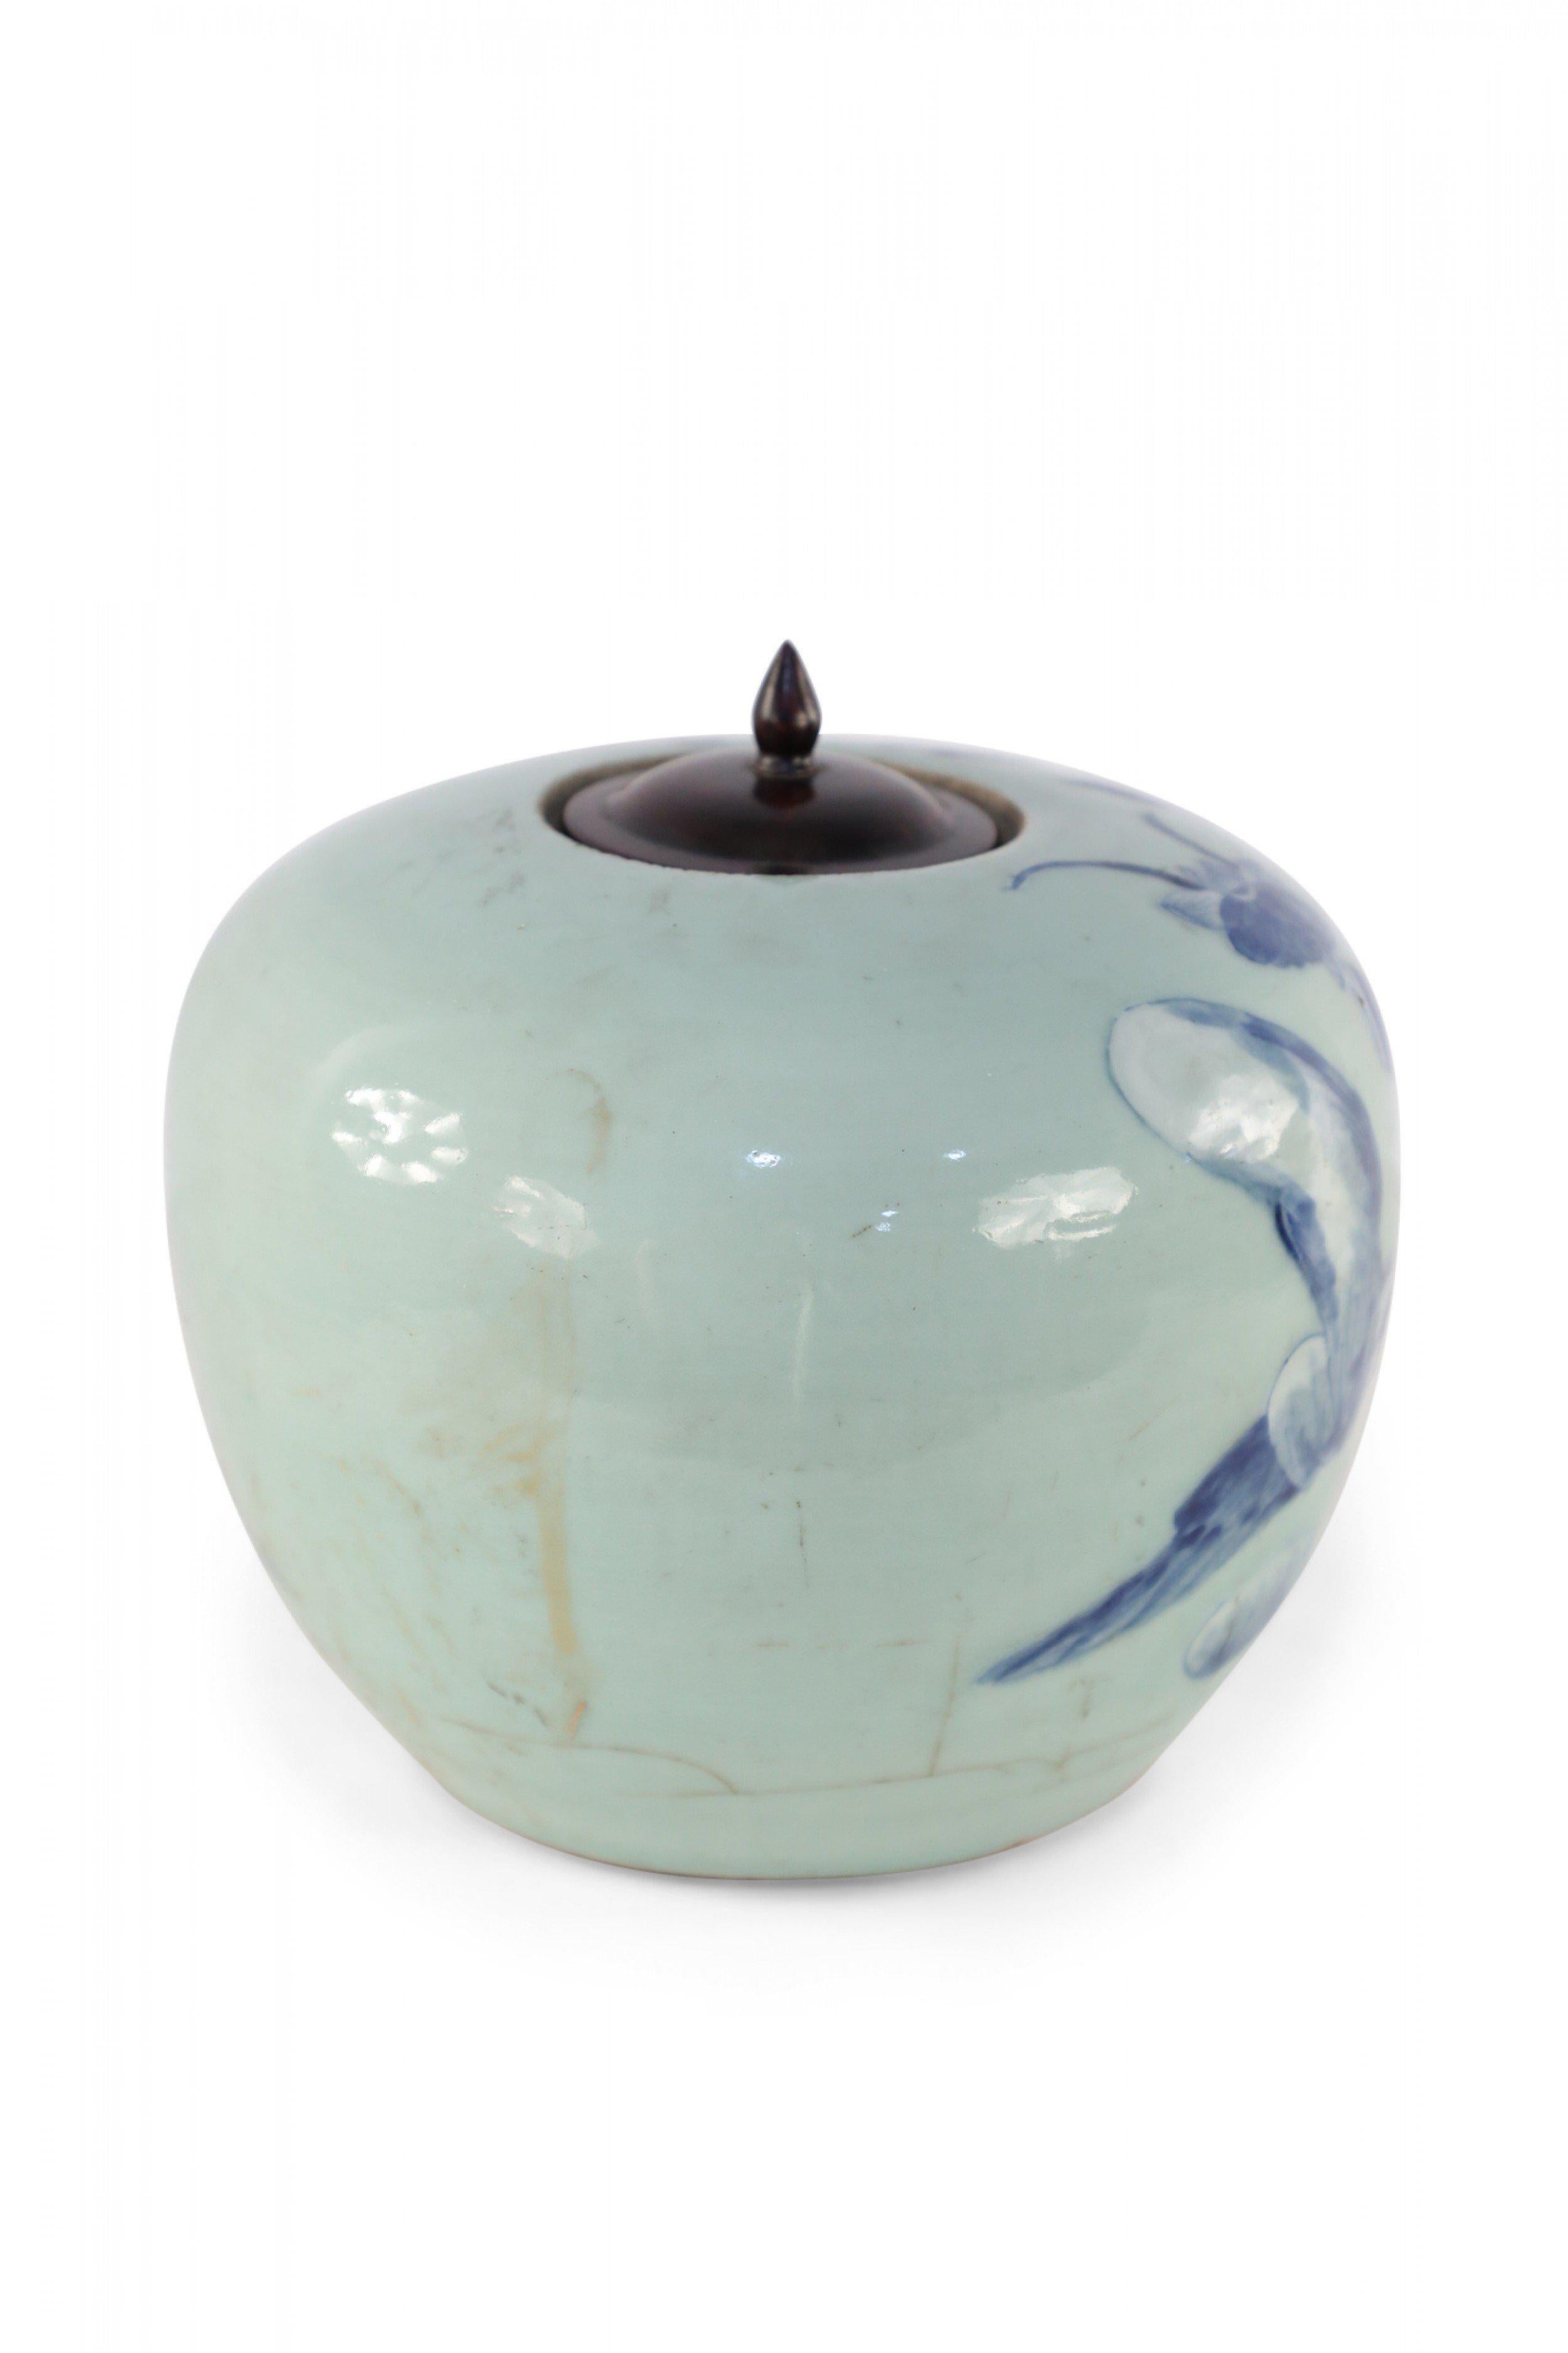 Chinese Celadon and Blue Figurative Lidded Porcelain Ginger Jar 1